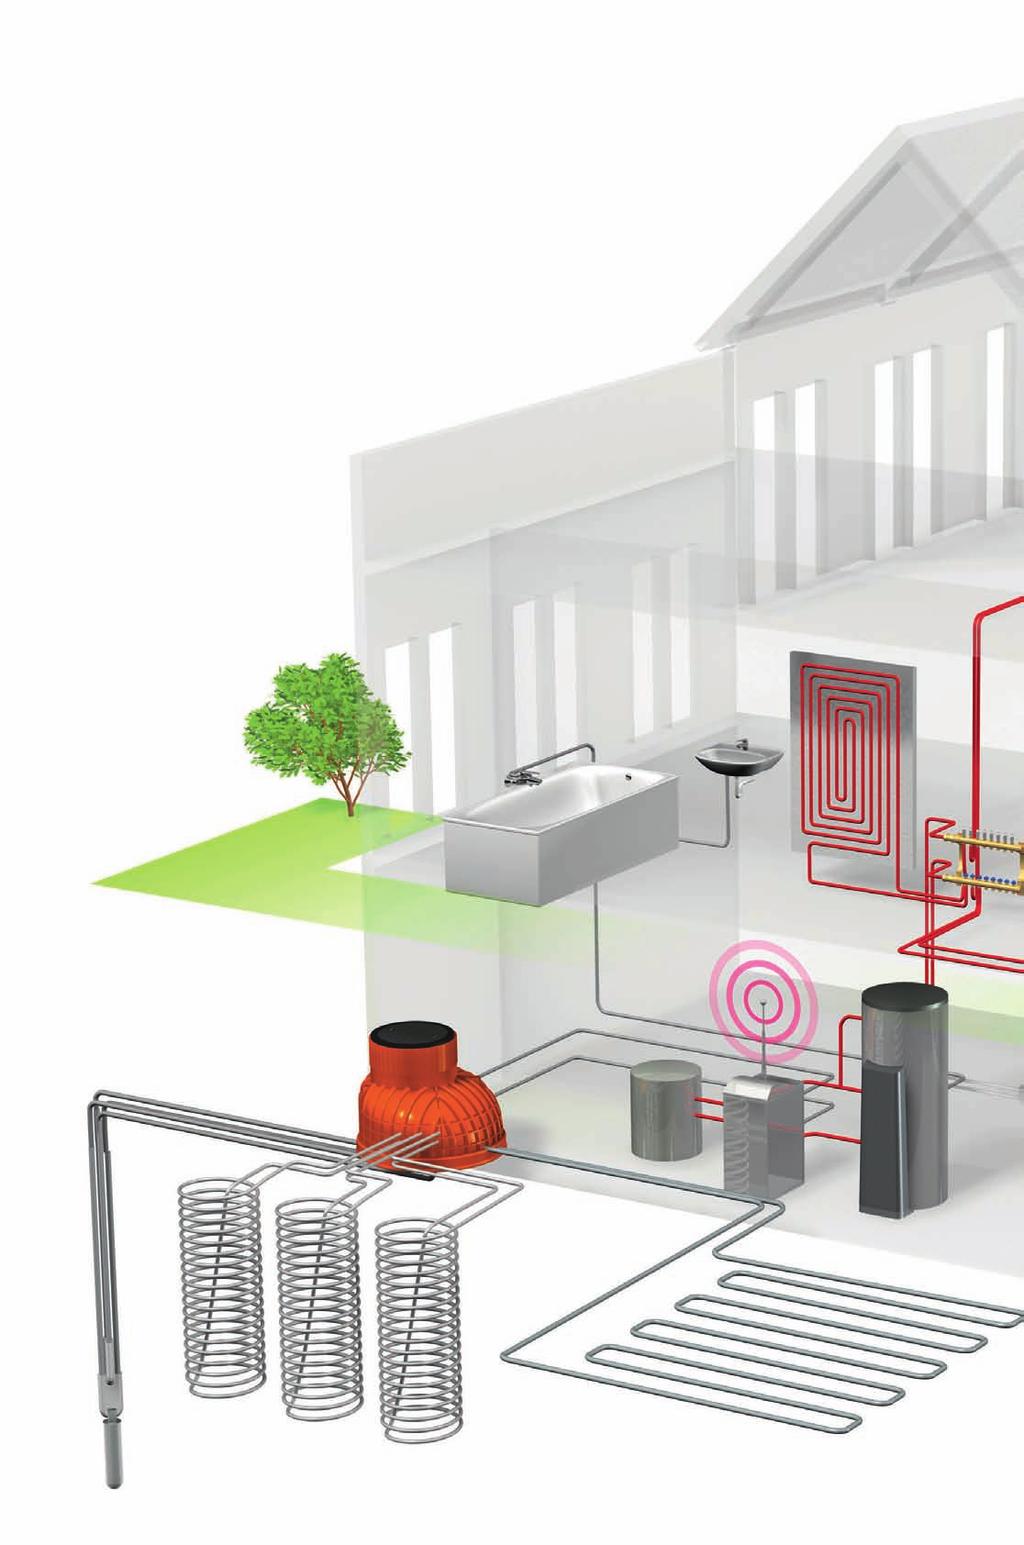 pasqyra e sistemit 1 Kontrolli integral: - kontrolli i gjeotermisë, pompa termike, stacioni për ujë të pijshëm, ngrohje dhe ftohje sipërfaqësore - aktivizimi i ngrohjes dhe ftohjes - mirëmbajtja nga